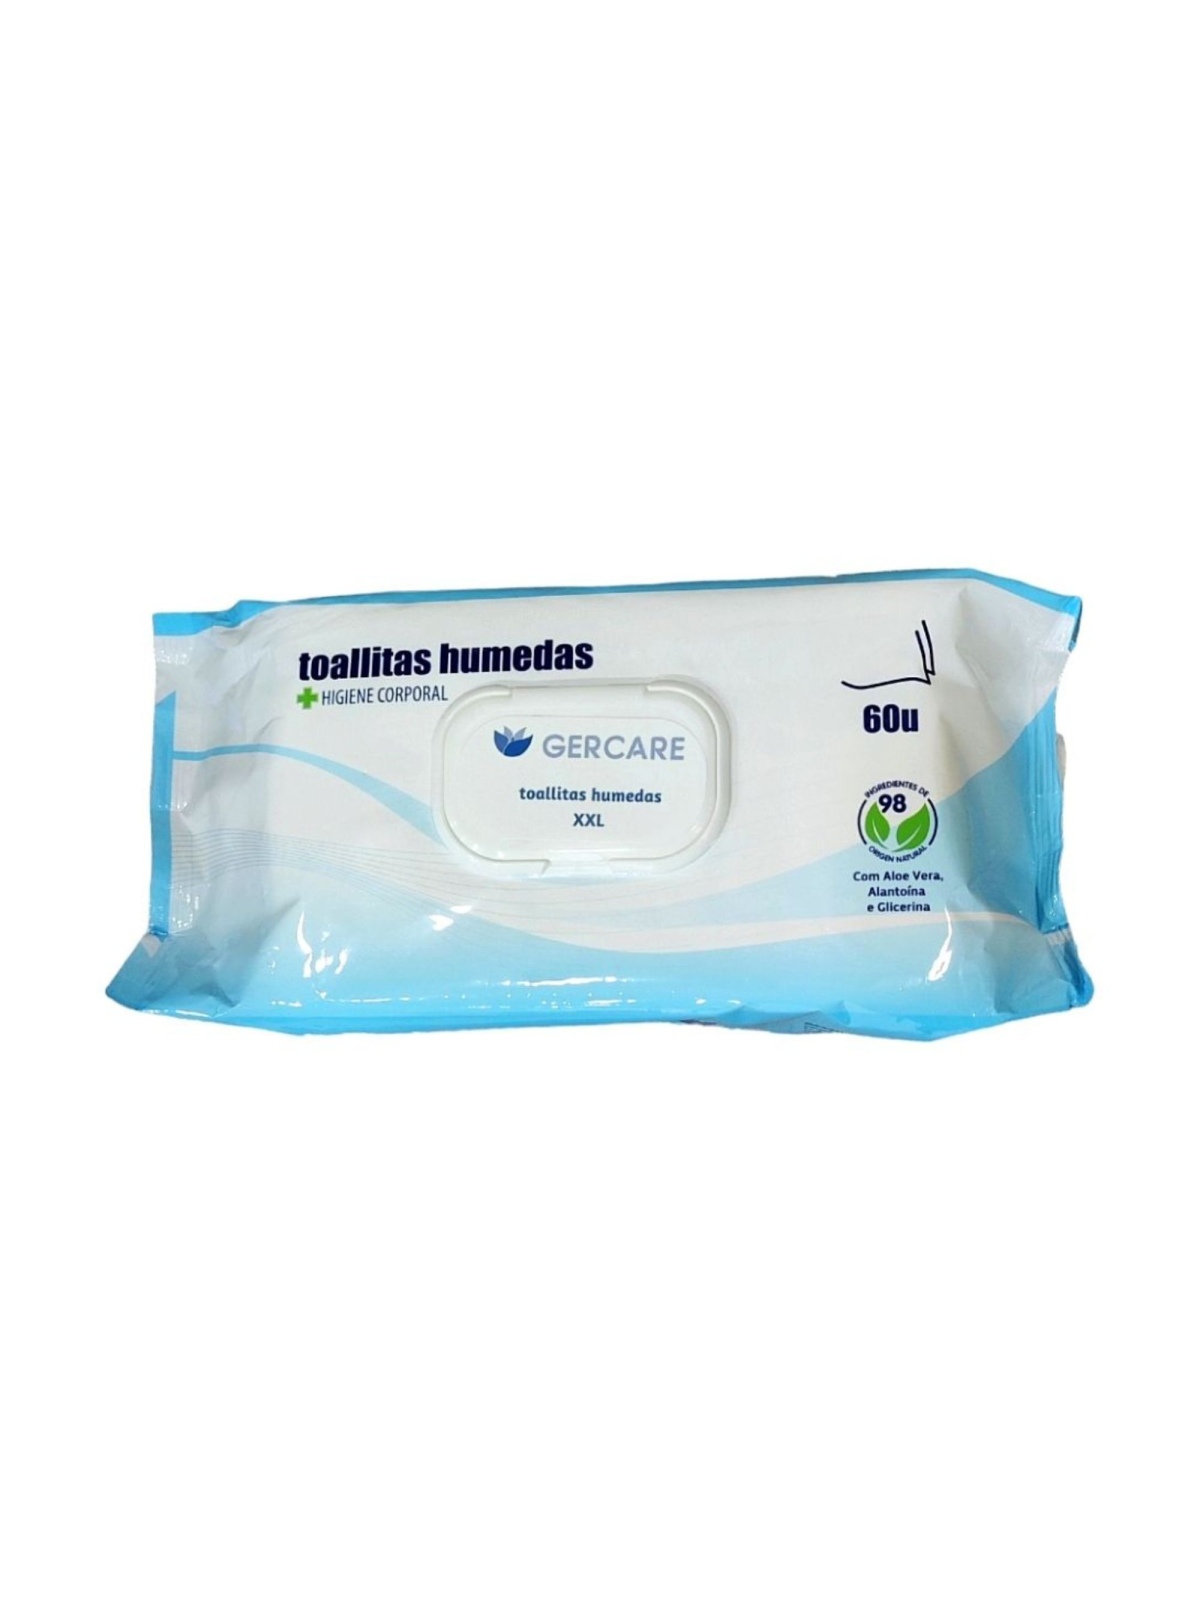 ARNOMED Toallas desechables estetica, 50 uds, toalla desechable para la  higiene corporal, toallitas secas bebe, toallitas adultos grandes,  toallitas